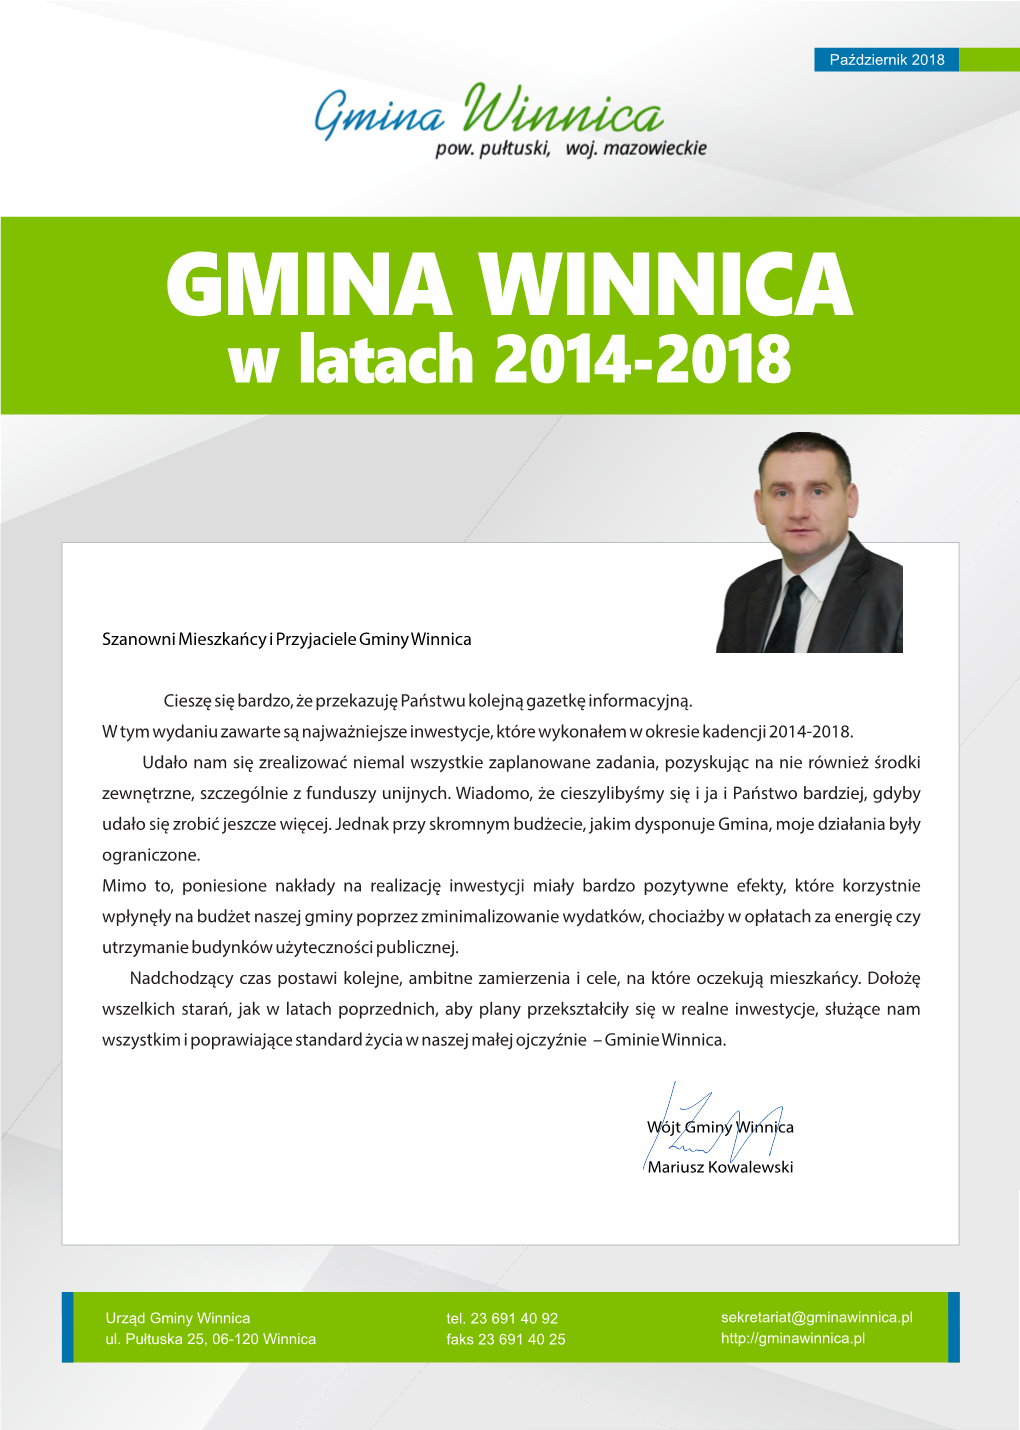 W Latach 2014-2018